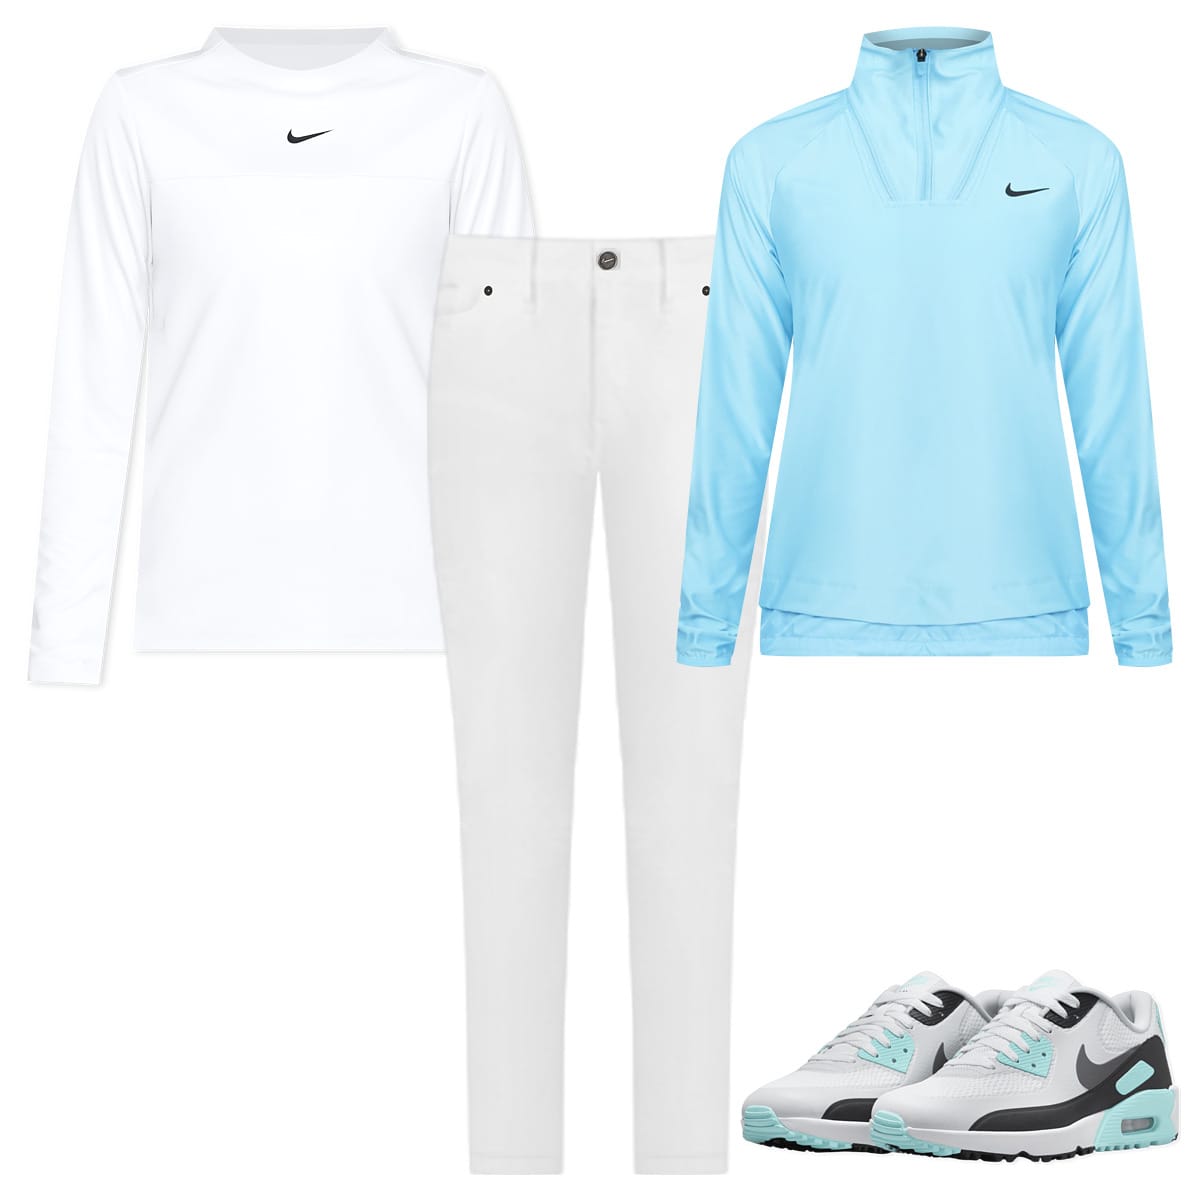 Gesves : une gamme de vêtements de golf voit le jour - La DH/Les Sports+